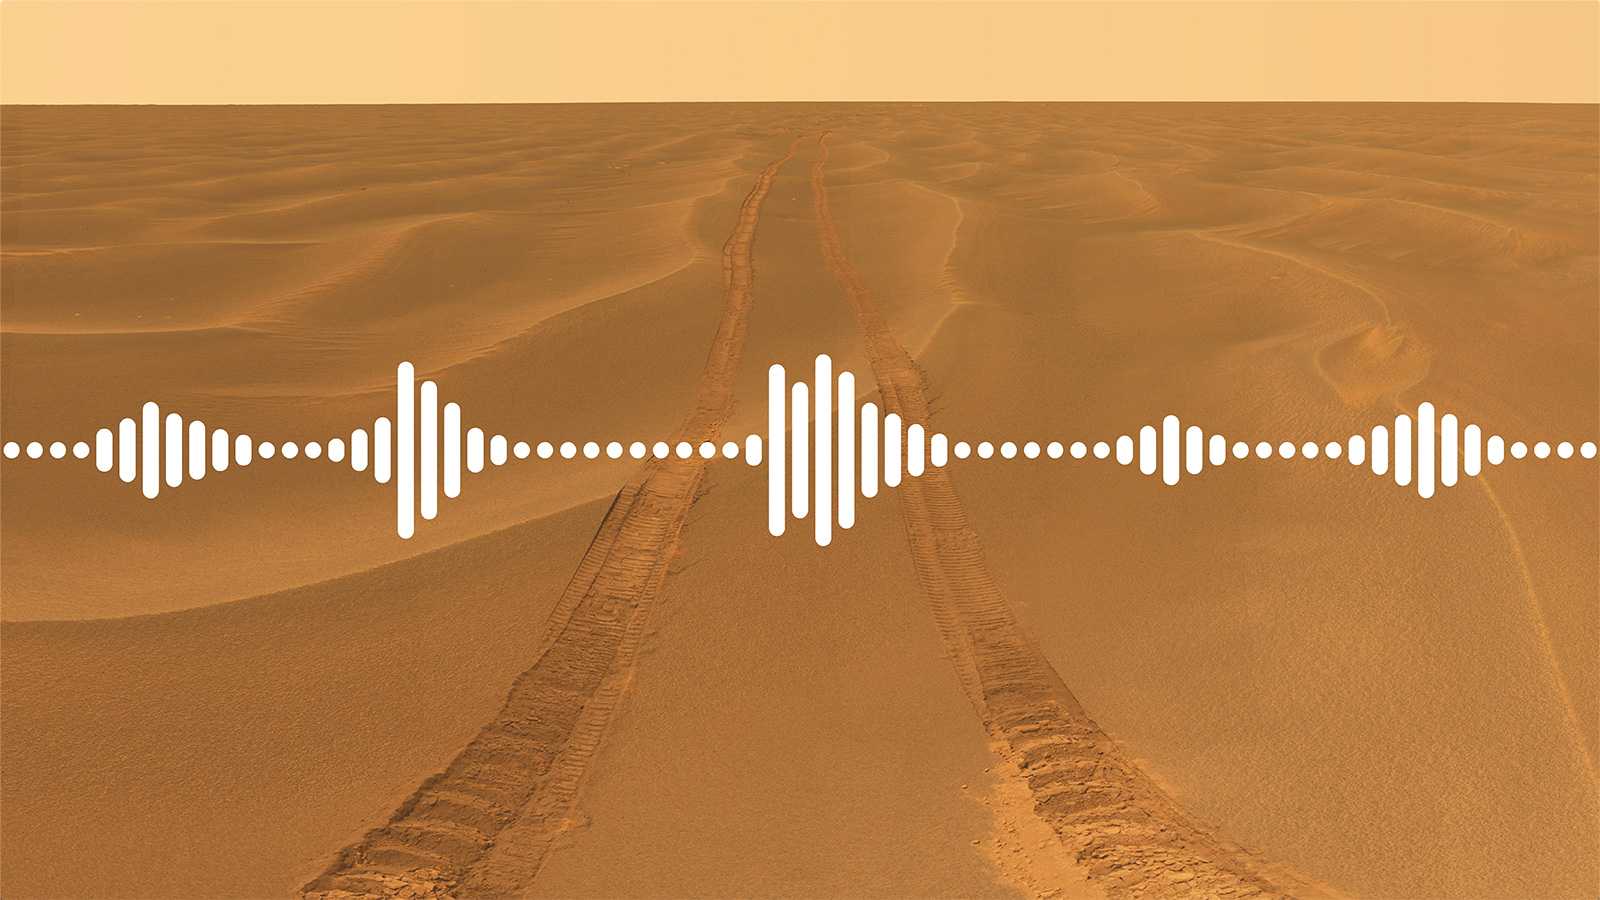 Микрофоны в ботинках помогут космонавтам не споткнуться на Марсе